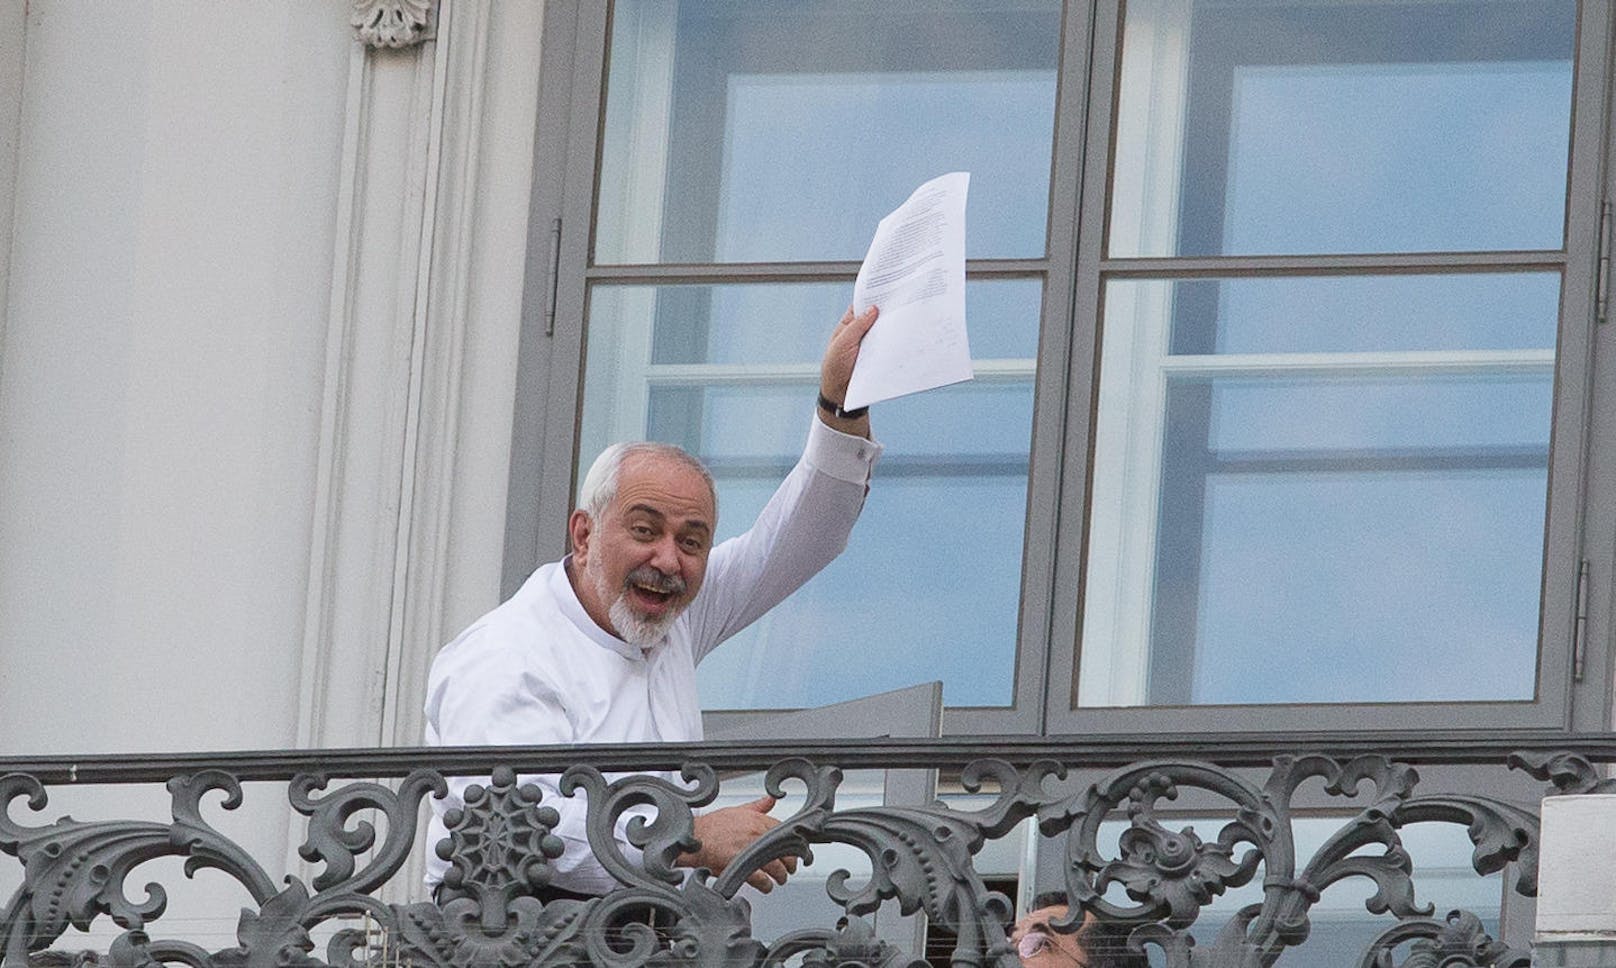 Am 12. Juni präsentierte der iranische Außenminister Mohammad Javad Zarif freudestrahlend einen Entwurf des bald abgeschlossenen Deals auf dem Balkon des Palais. Nicht einmal zwei Tage später wurde die Einigung offiziell verkündet.